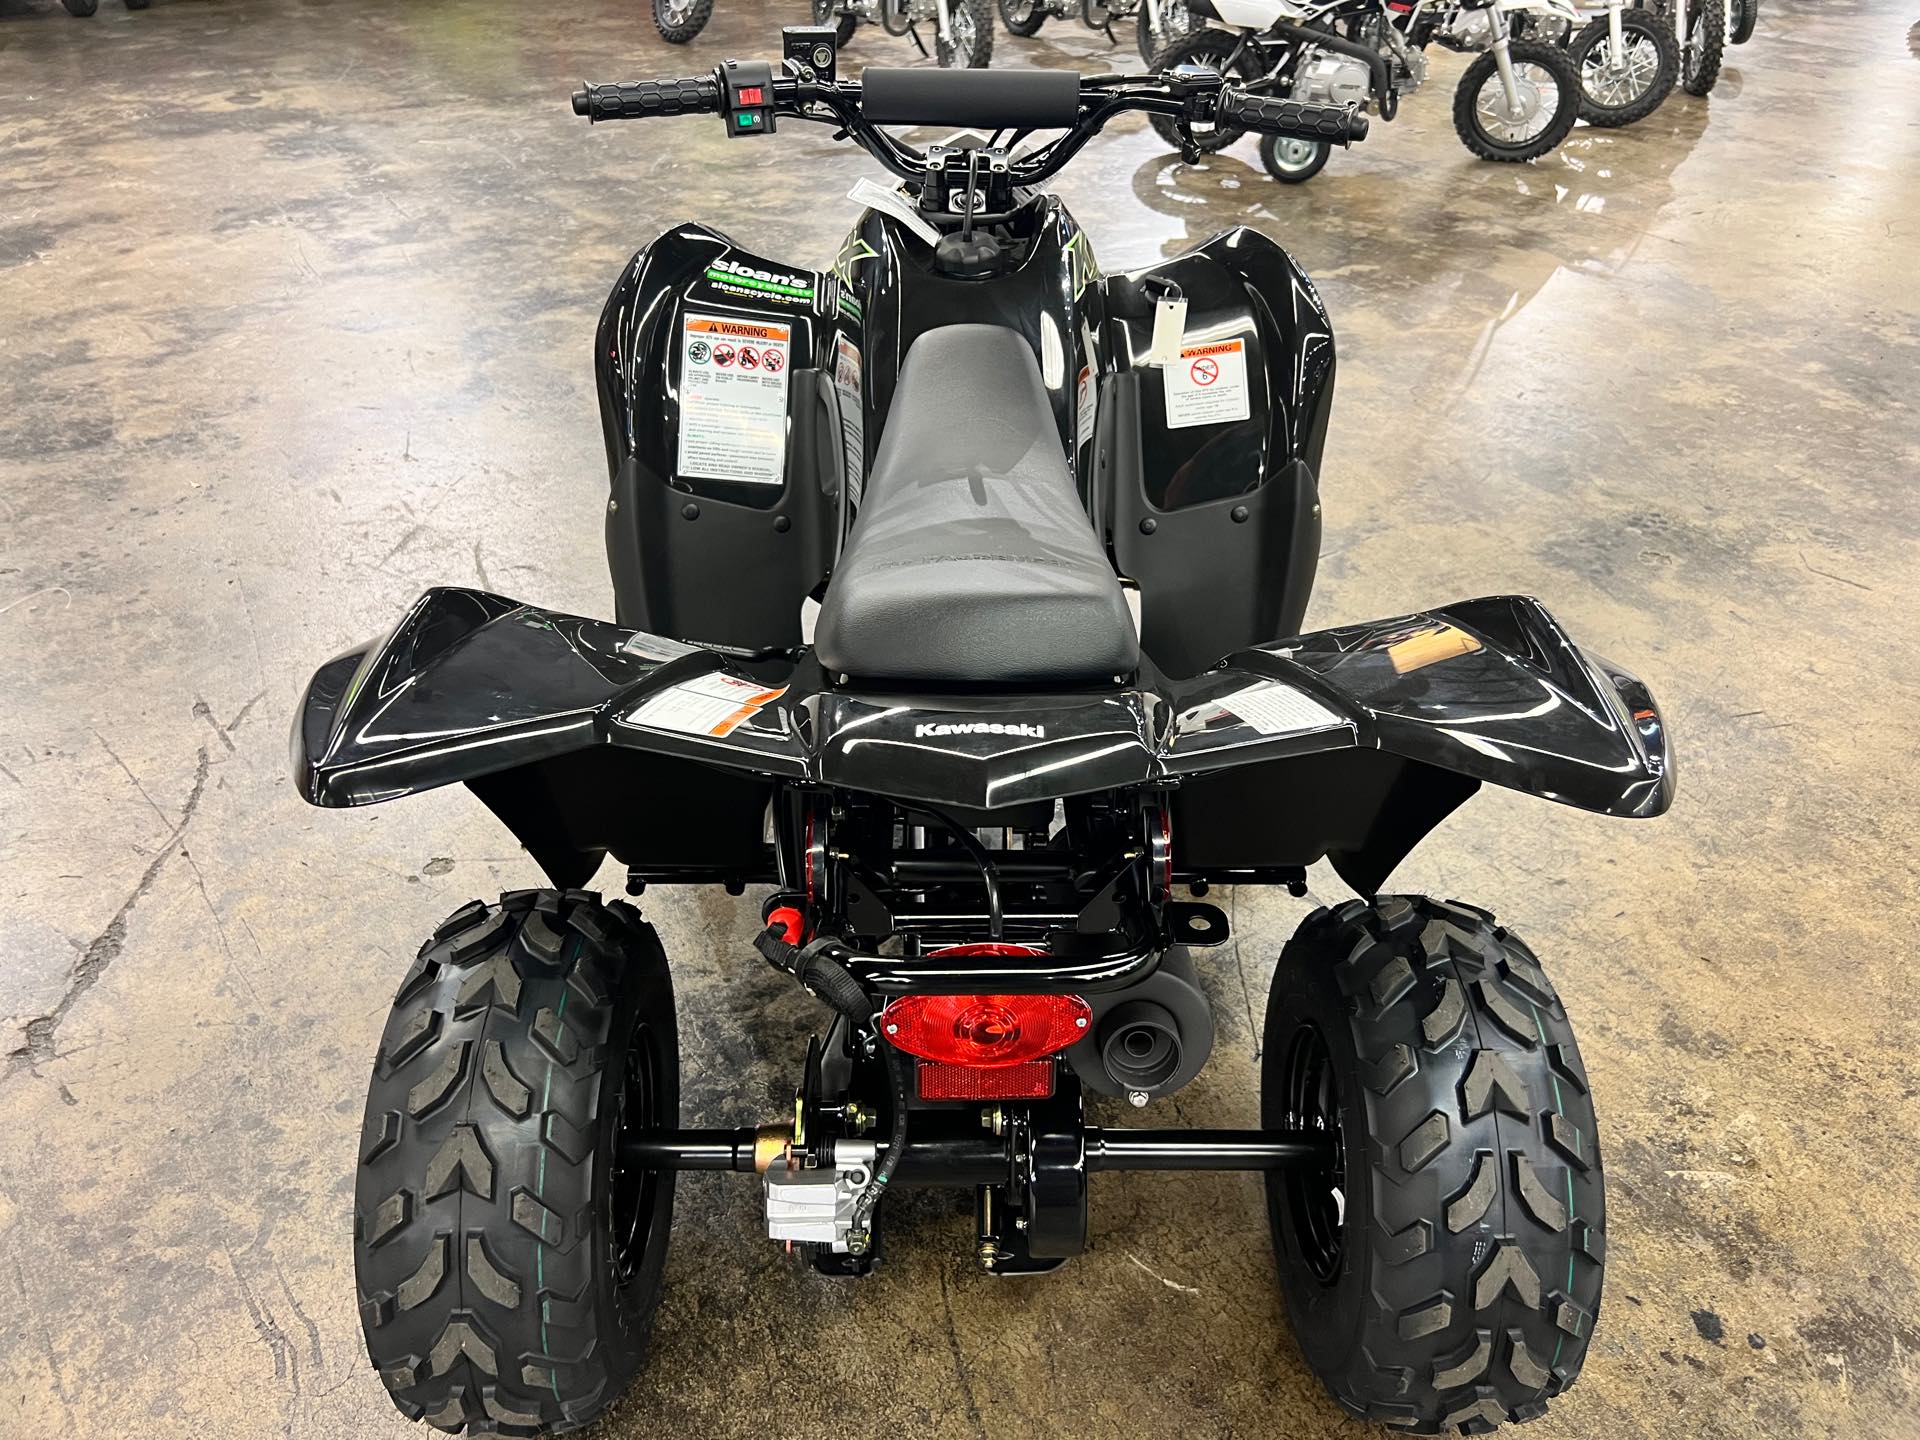 2022 Kawasaki KFX 50 at Sloans Motorcycle ATV, Murfreesboro, TN, 37129